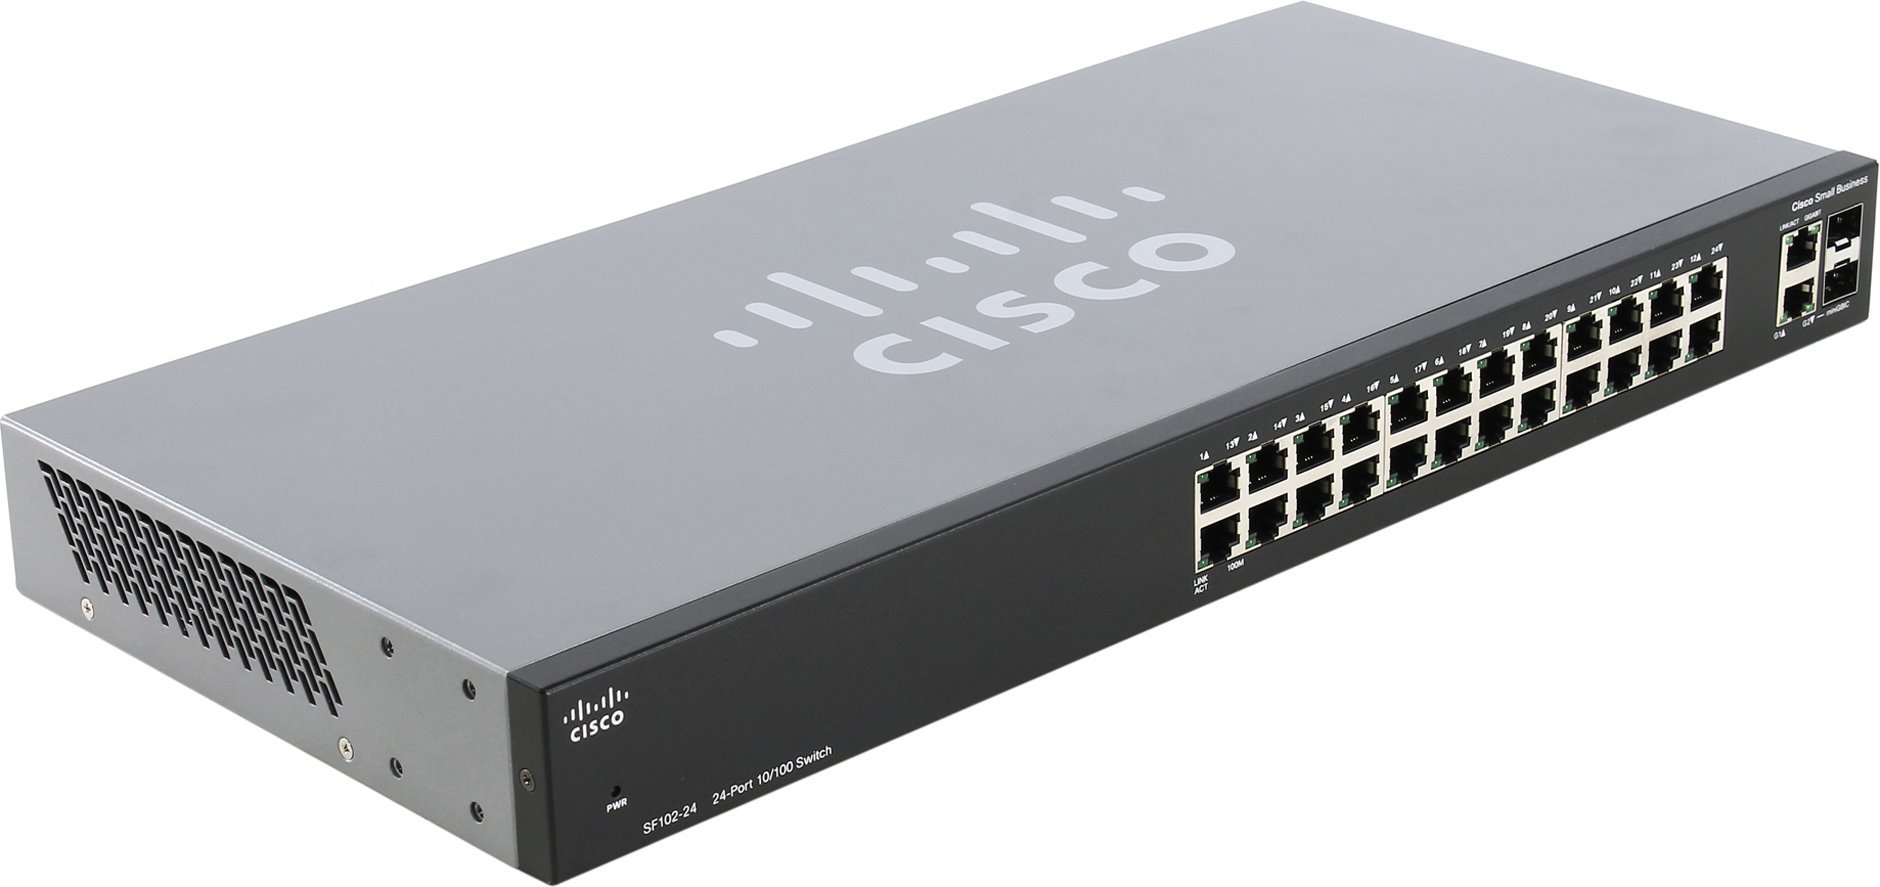 에 대해 여러분은 무엇을 배웠는 공격에 200 000 네트워크의 Cisco 스위치니까?